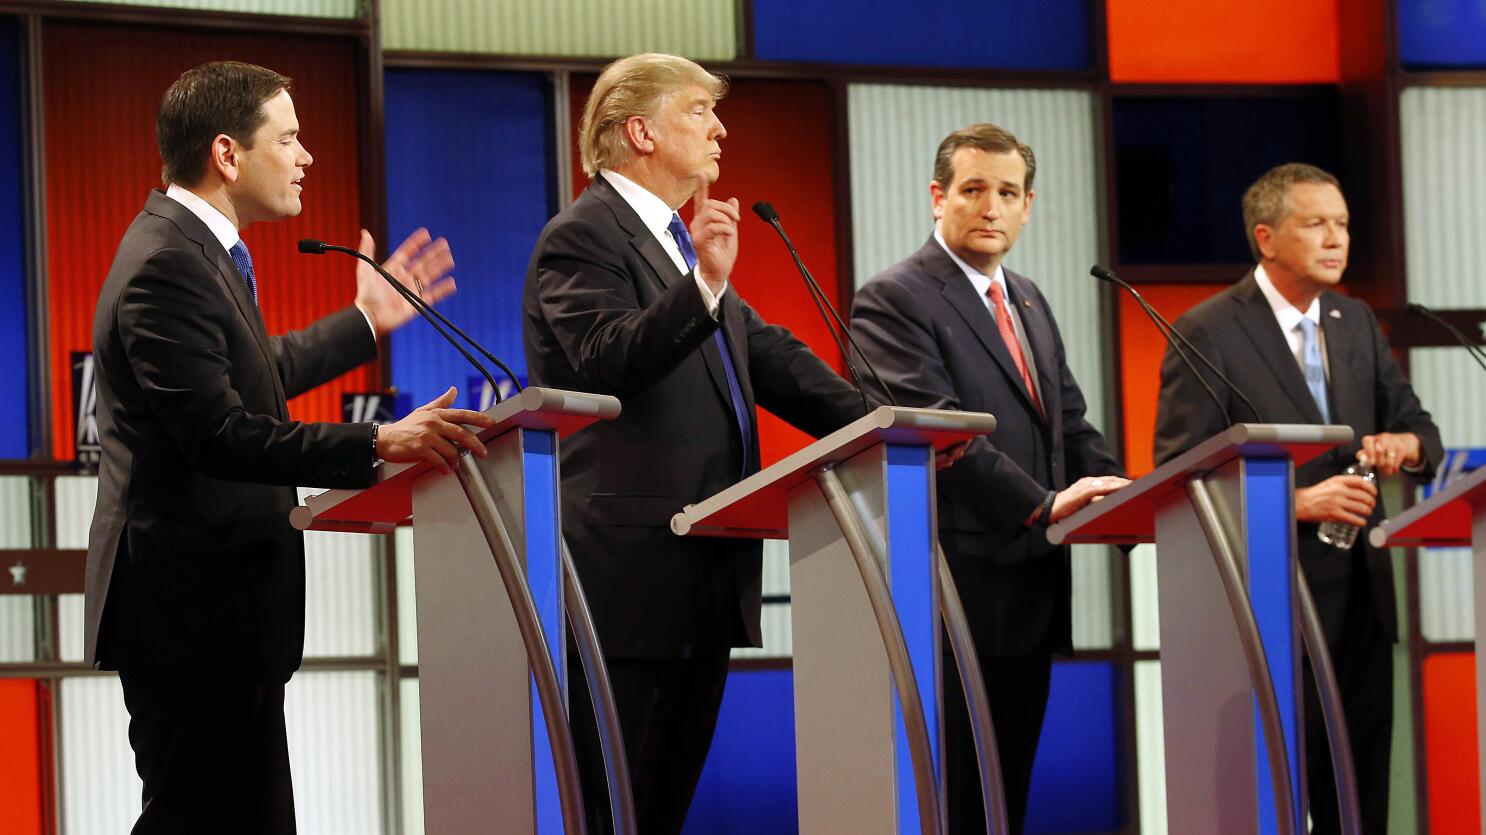 2016 Republican debate: Trump on small hands: 'I guarantee you